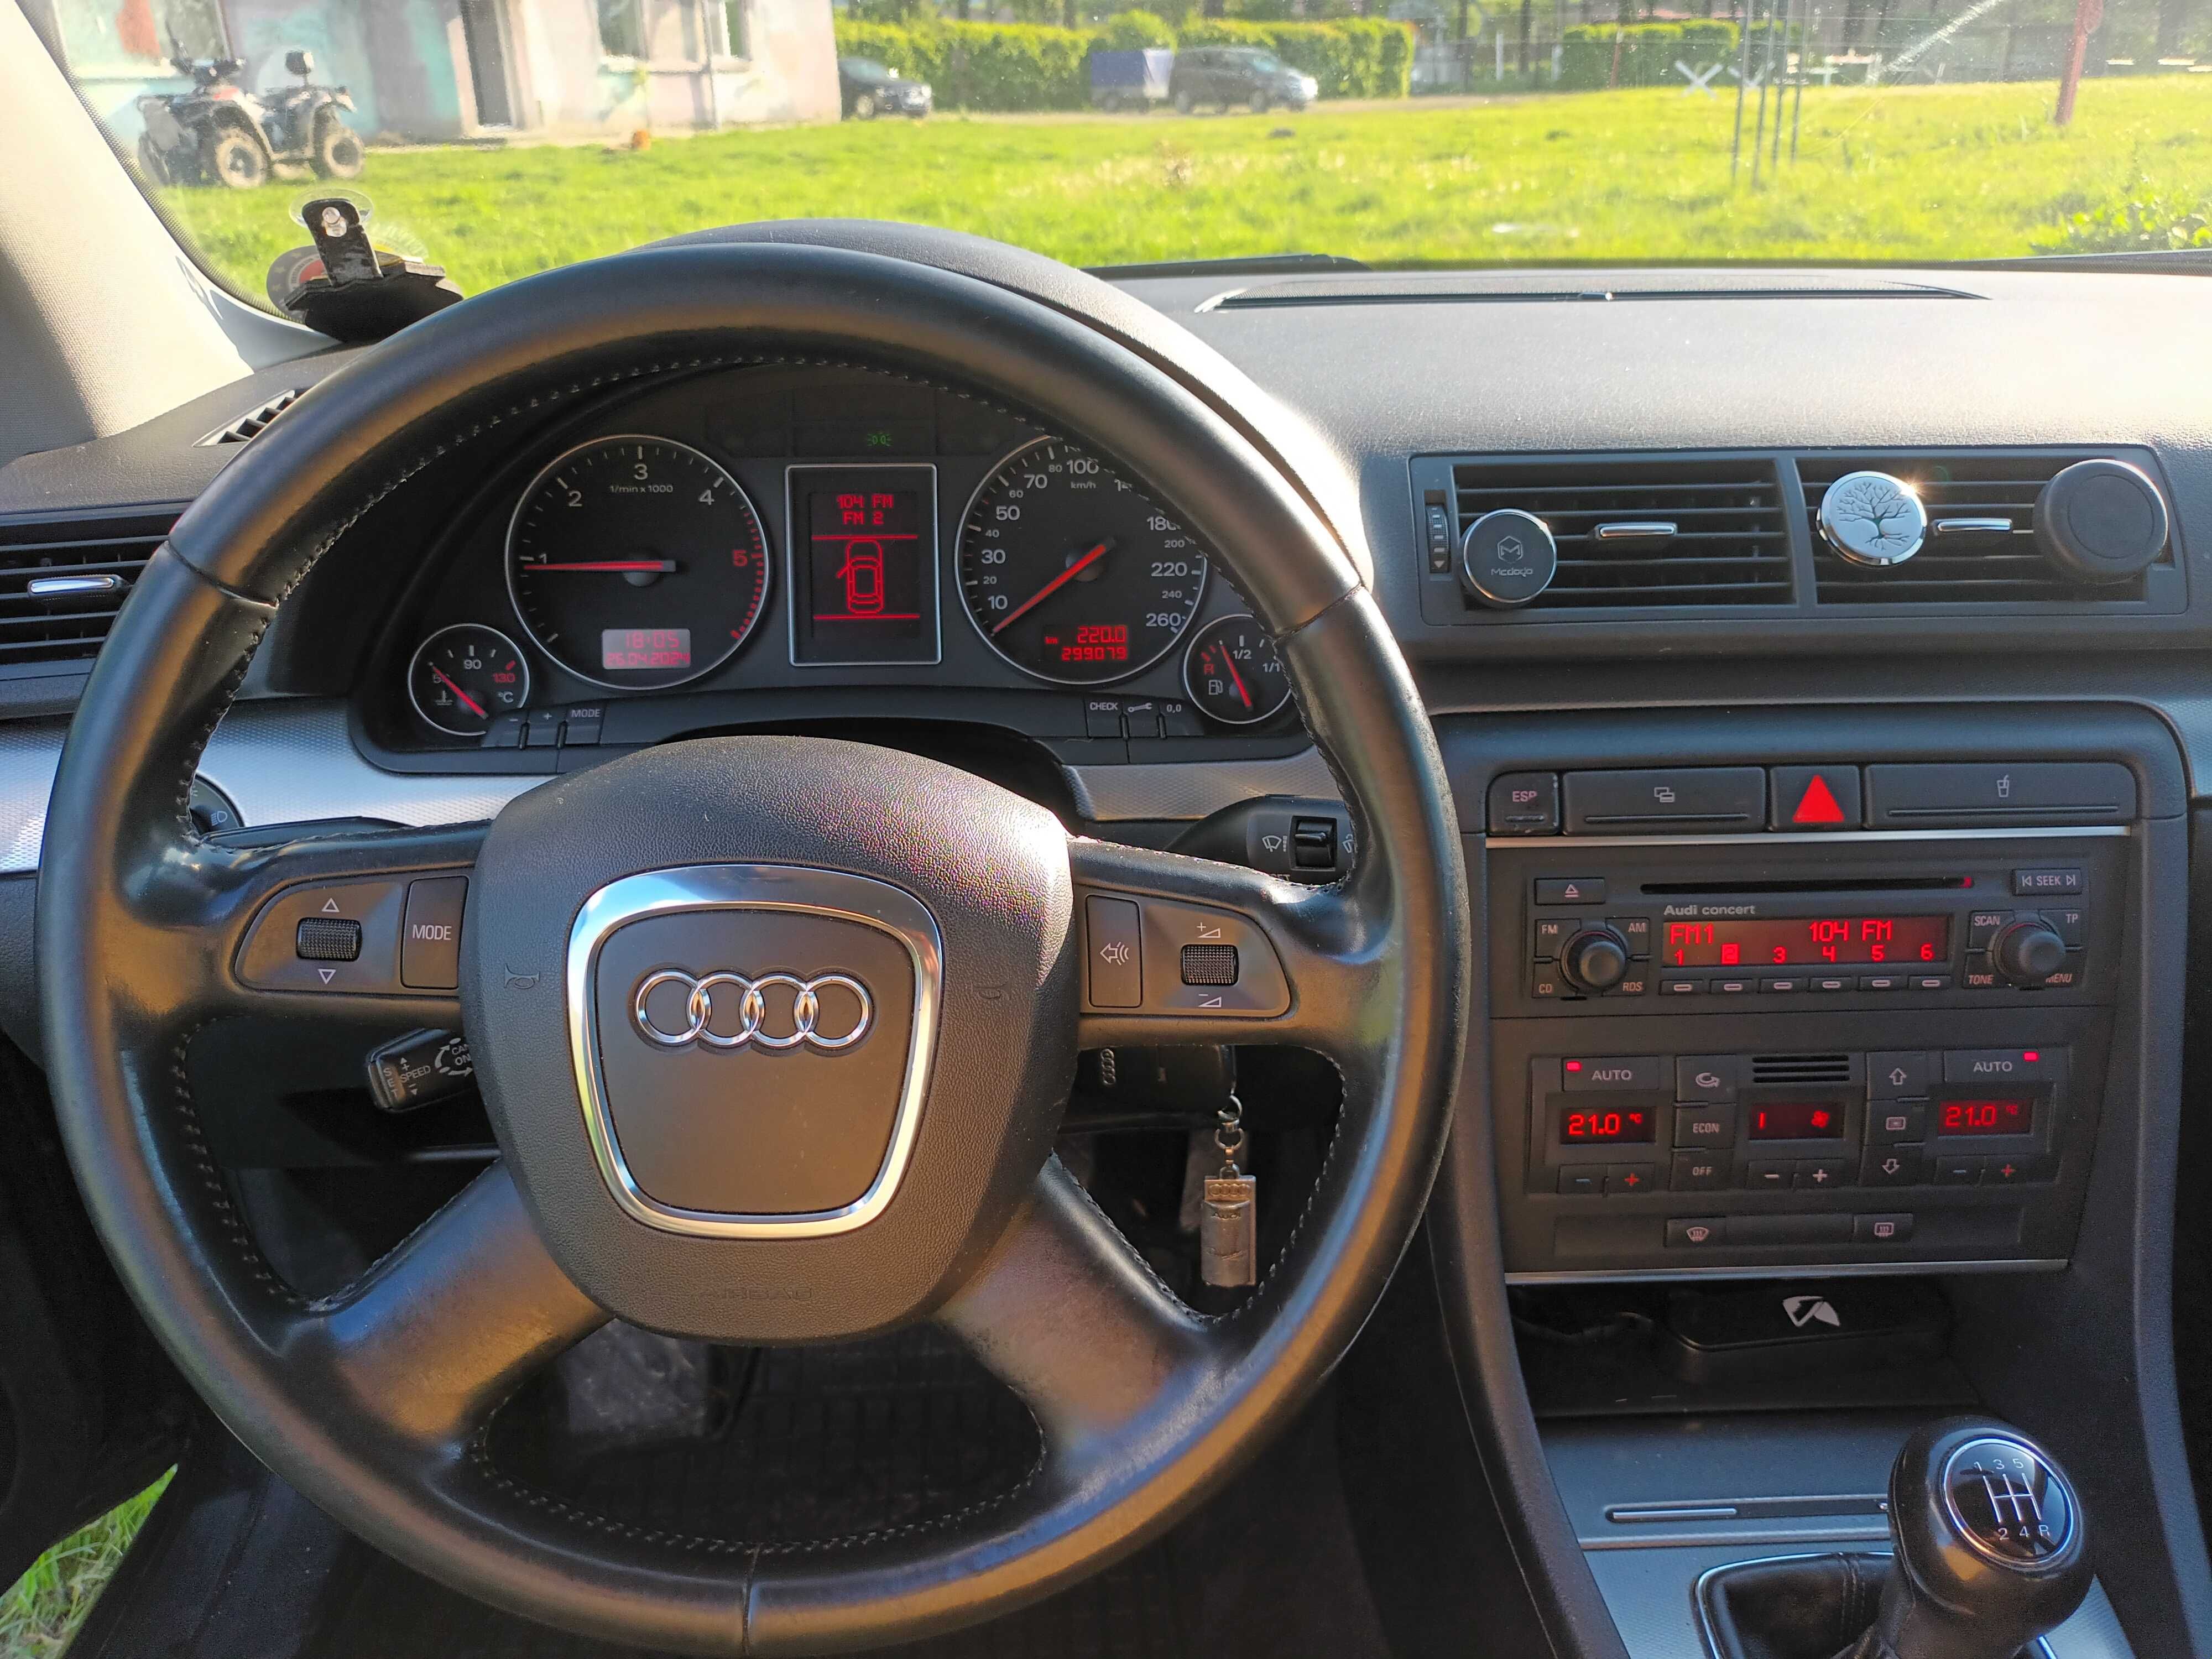 Audi a4 b6 1.9 tdi